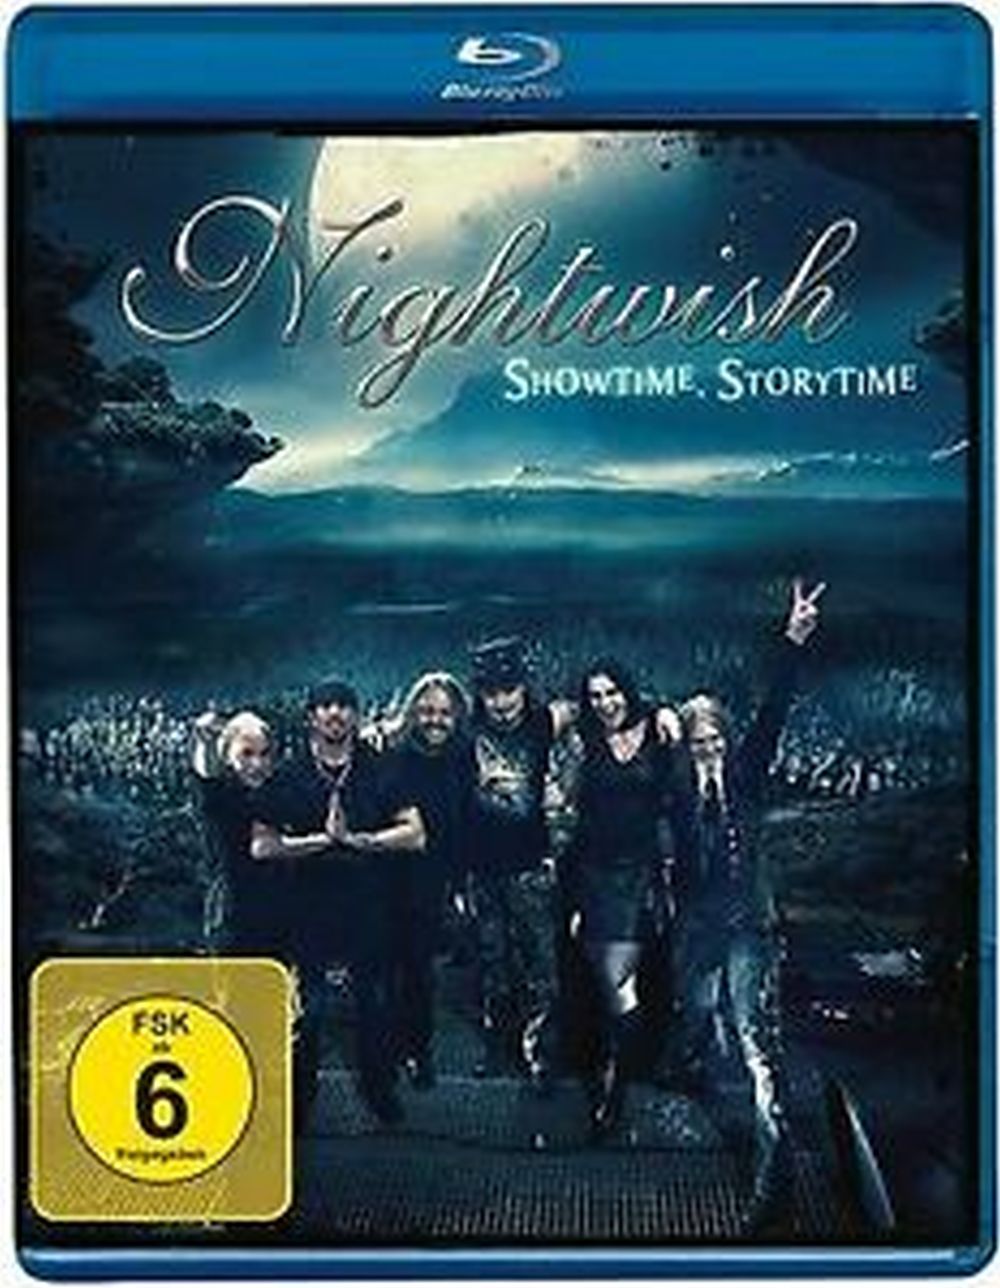 Nightwish - Showtime, Storytime (2xBR) (RA/B/C) - Blu-Ray - Music